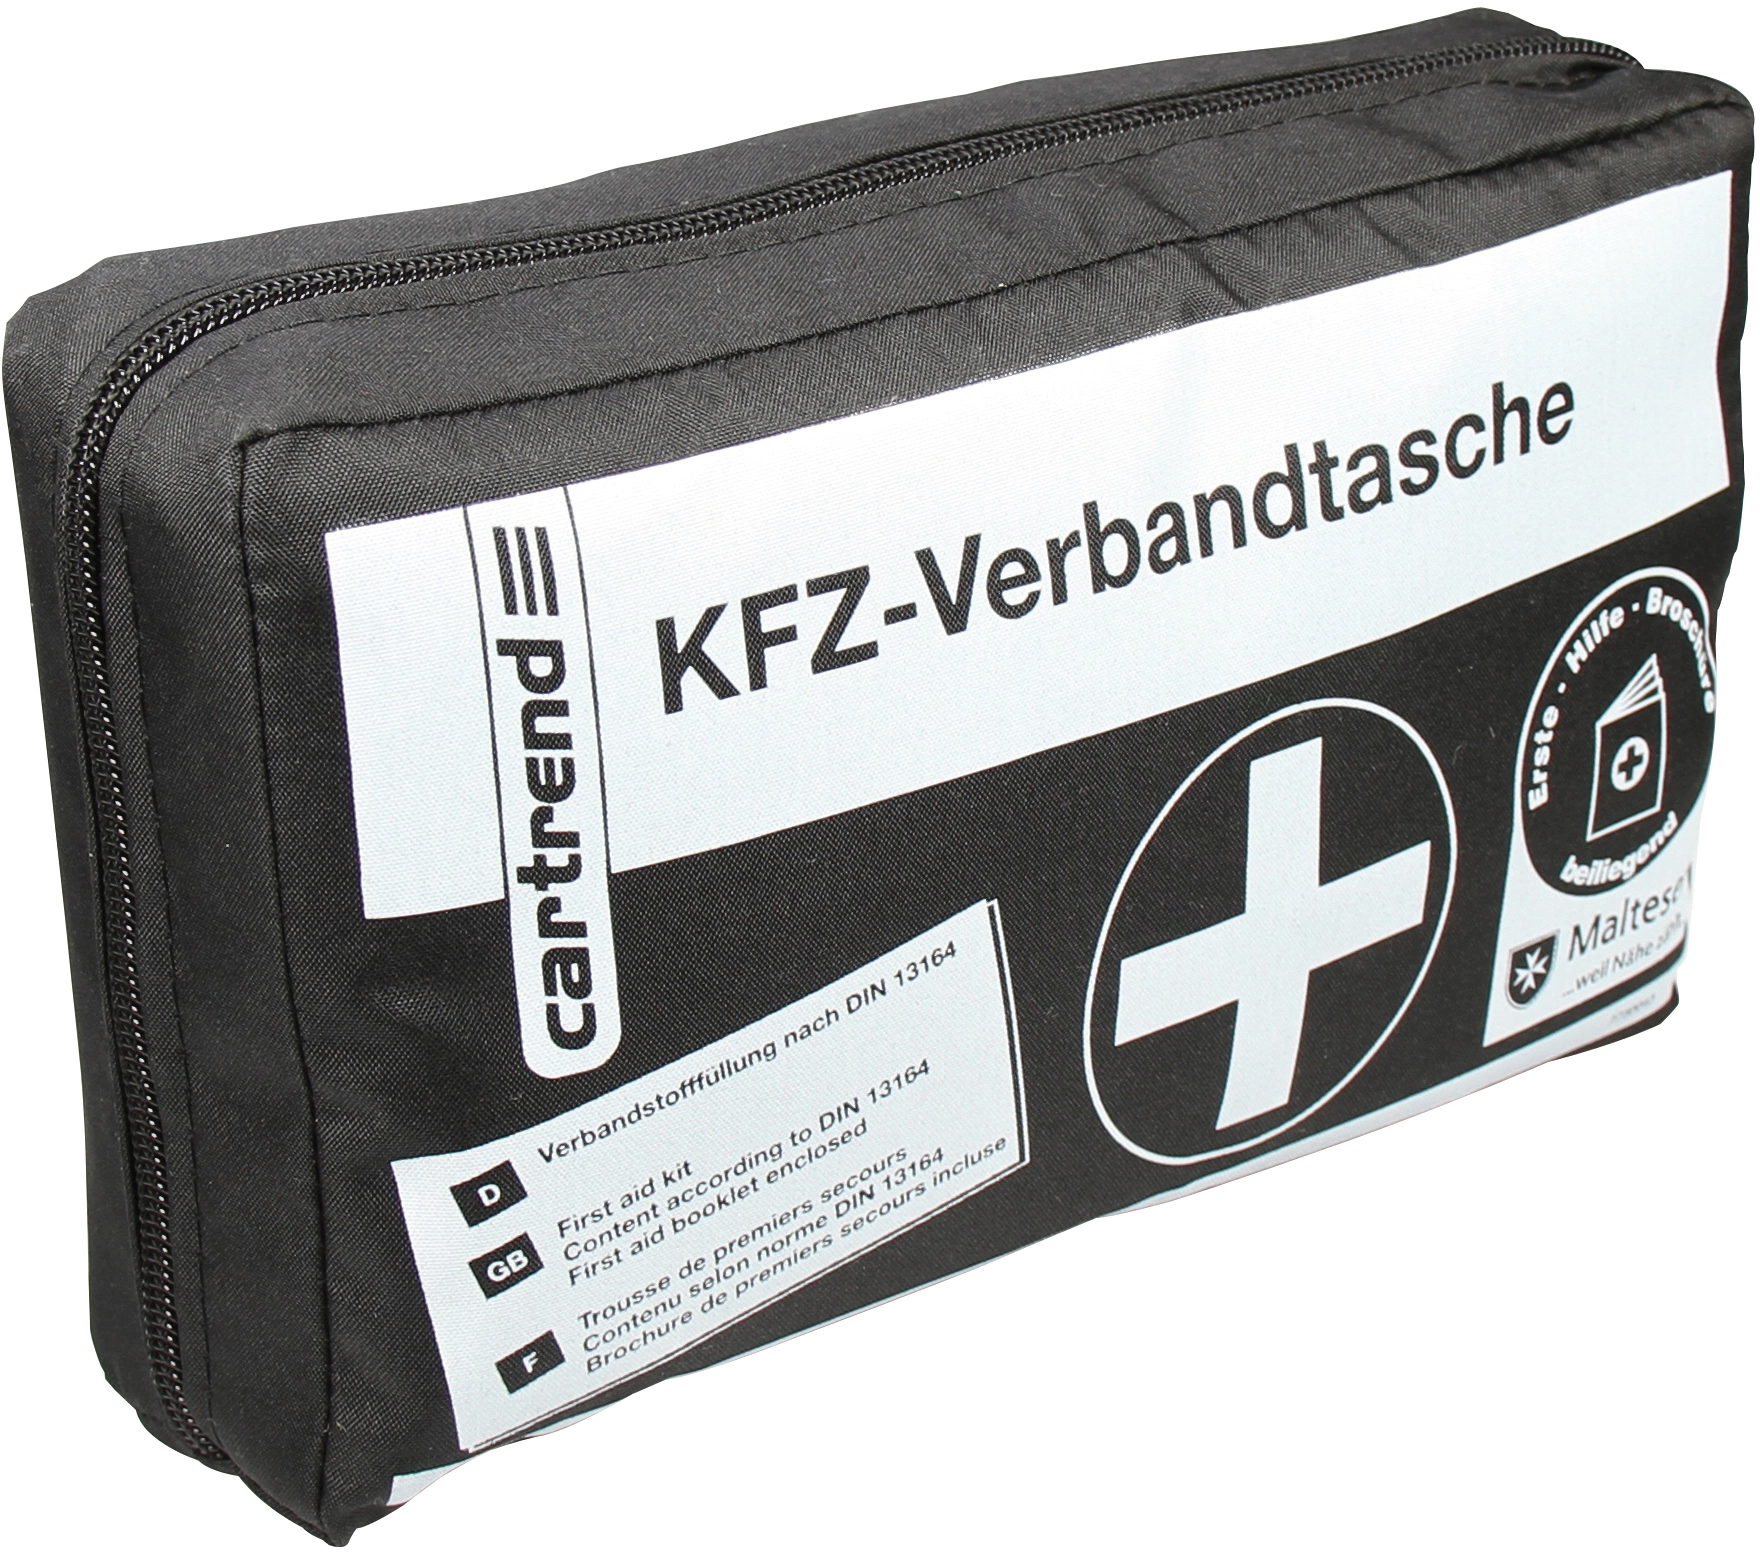 Cartrend KFZ-Verbandtasche 7730043 Schwarz DIN 13164 ab 8,36